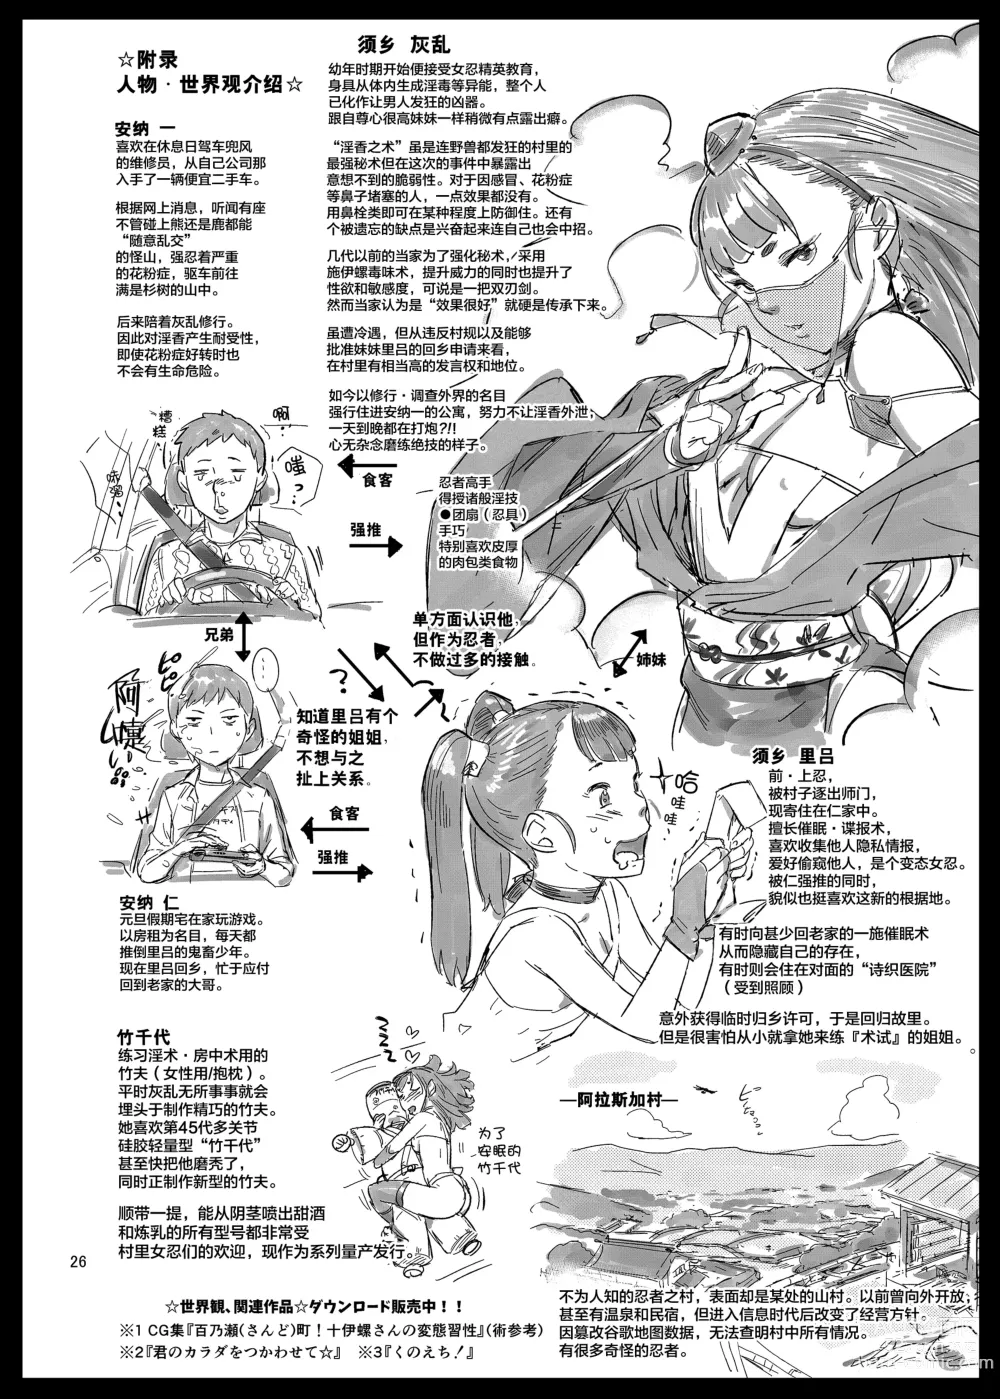 Page 27 of doujinshi 里守ハイラ淫法帖